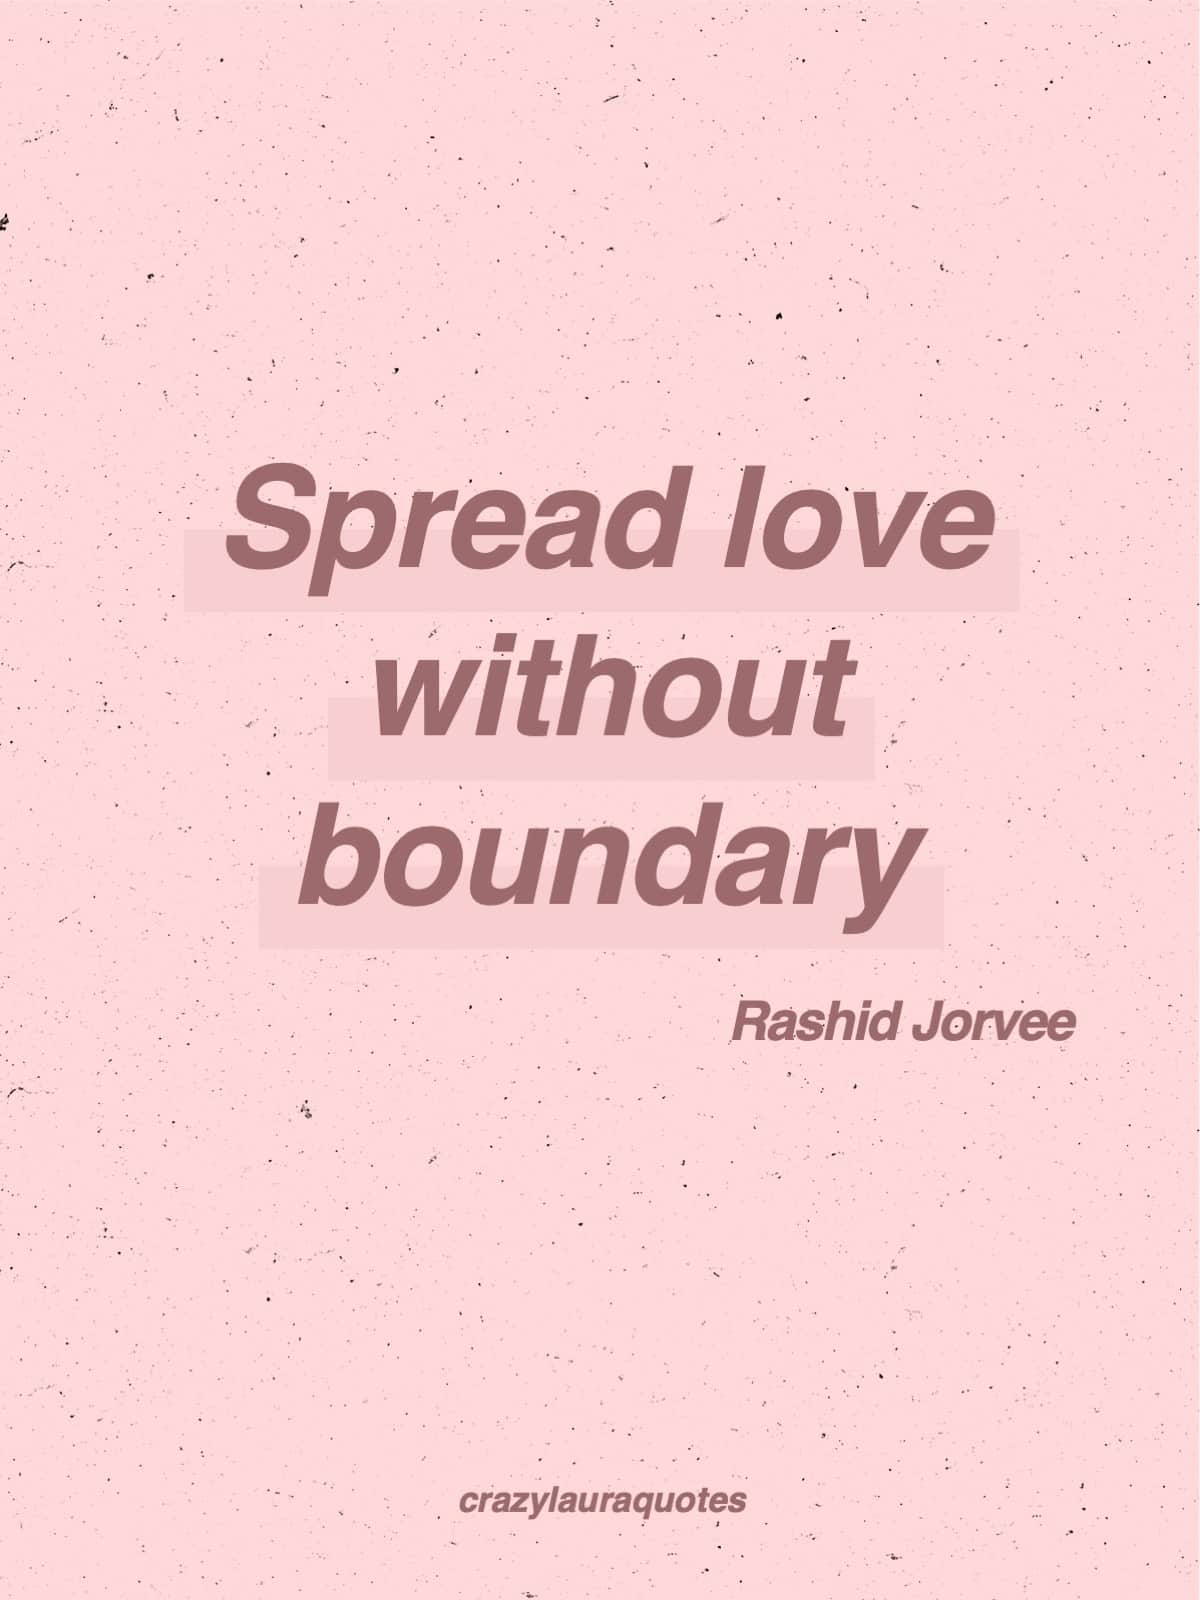 boundless love rashid jorvee quote